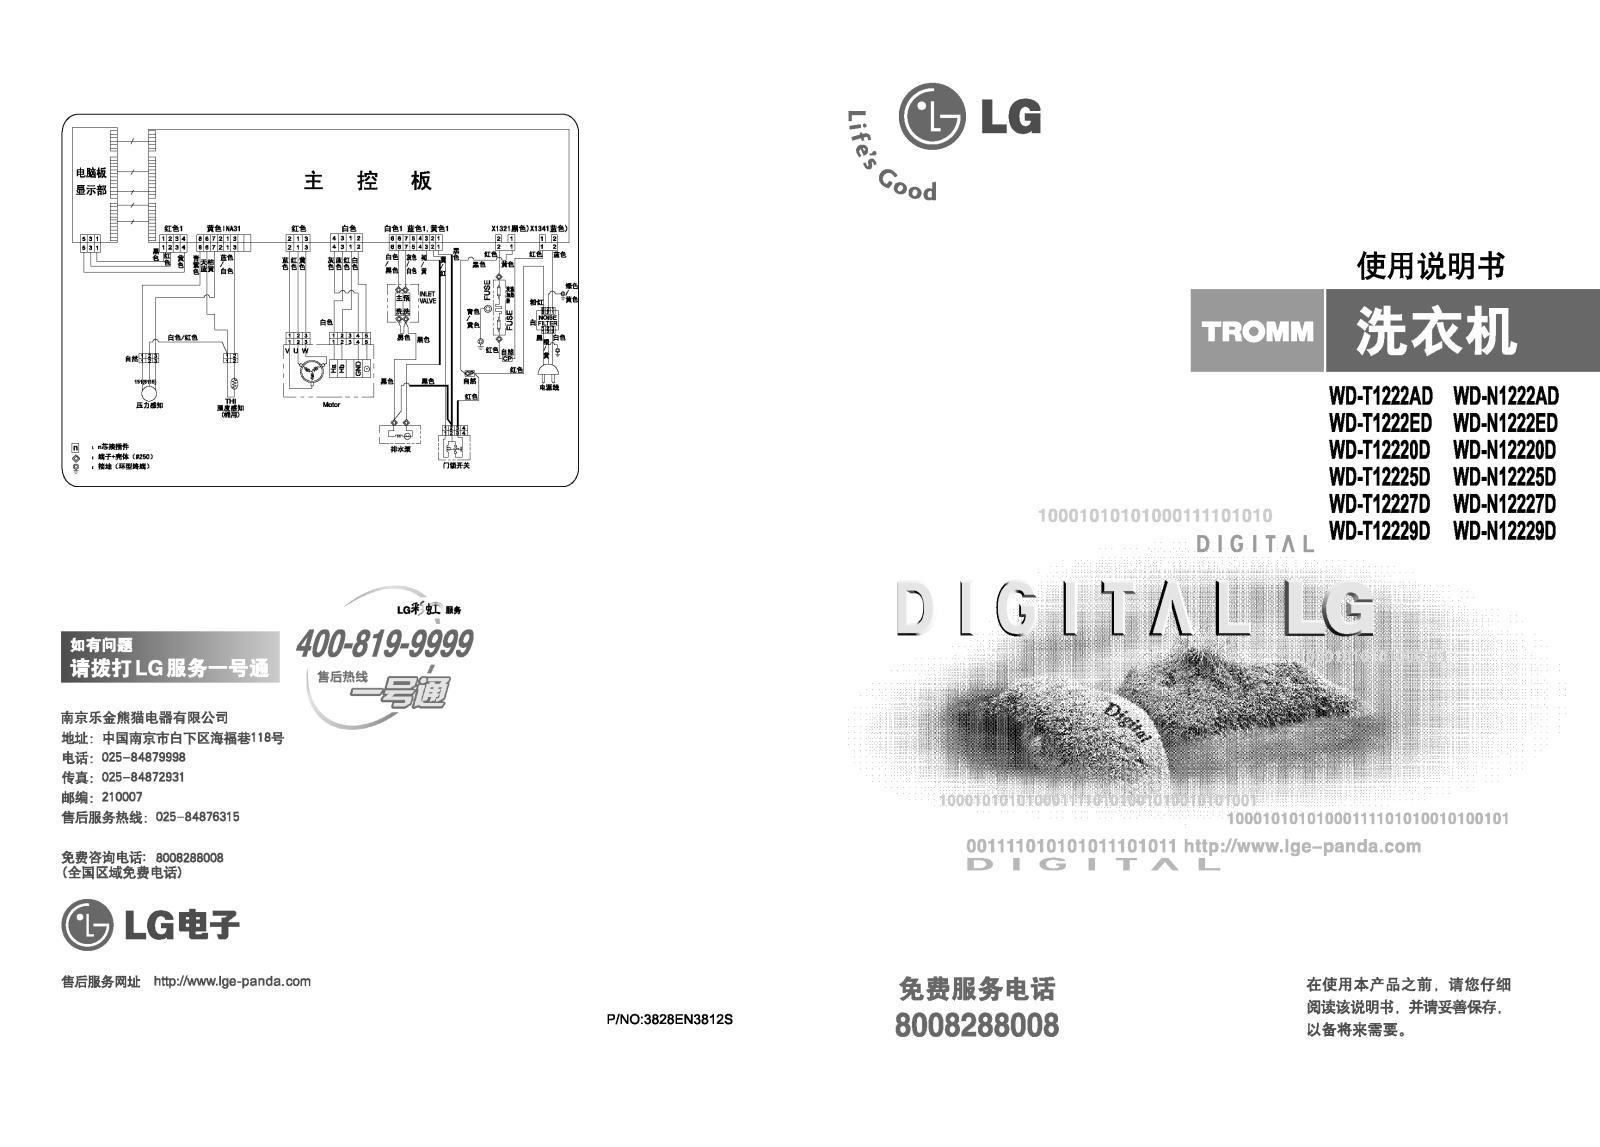 LG WD-T1222AD, WD-T1222ED, WD-T12220D, WD-T12225D, WD-T12227D User Manual